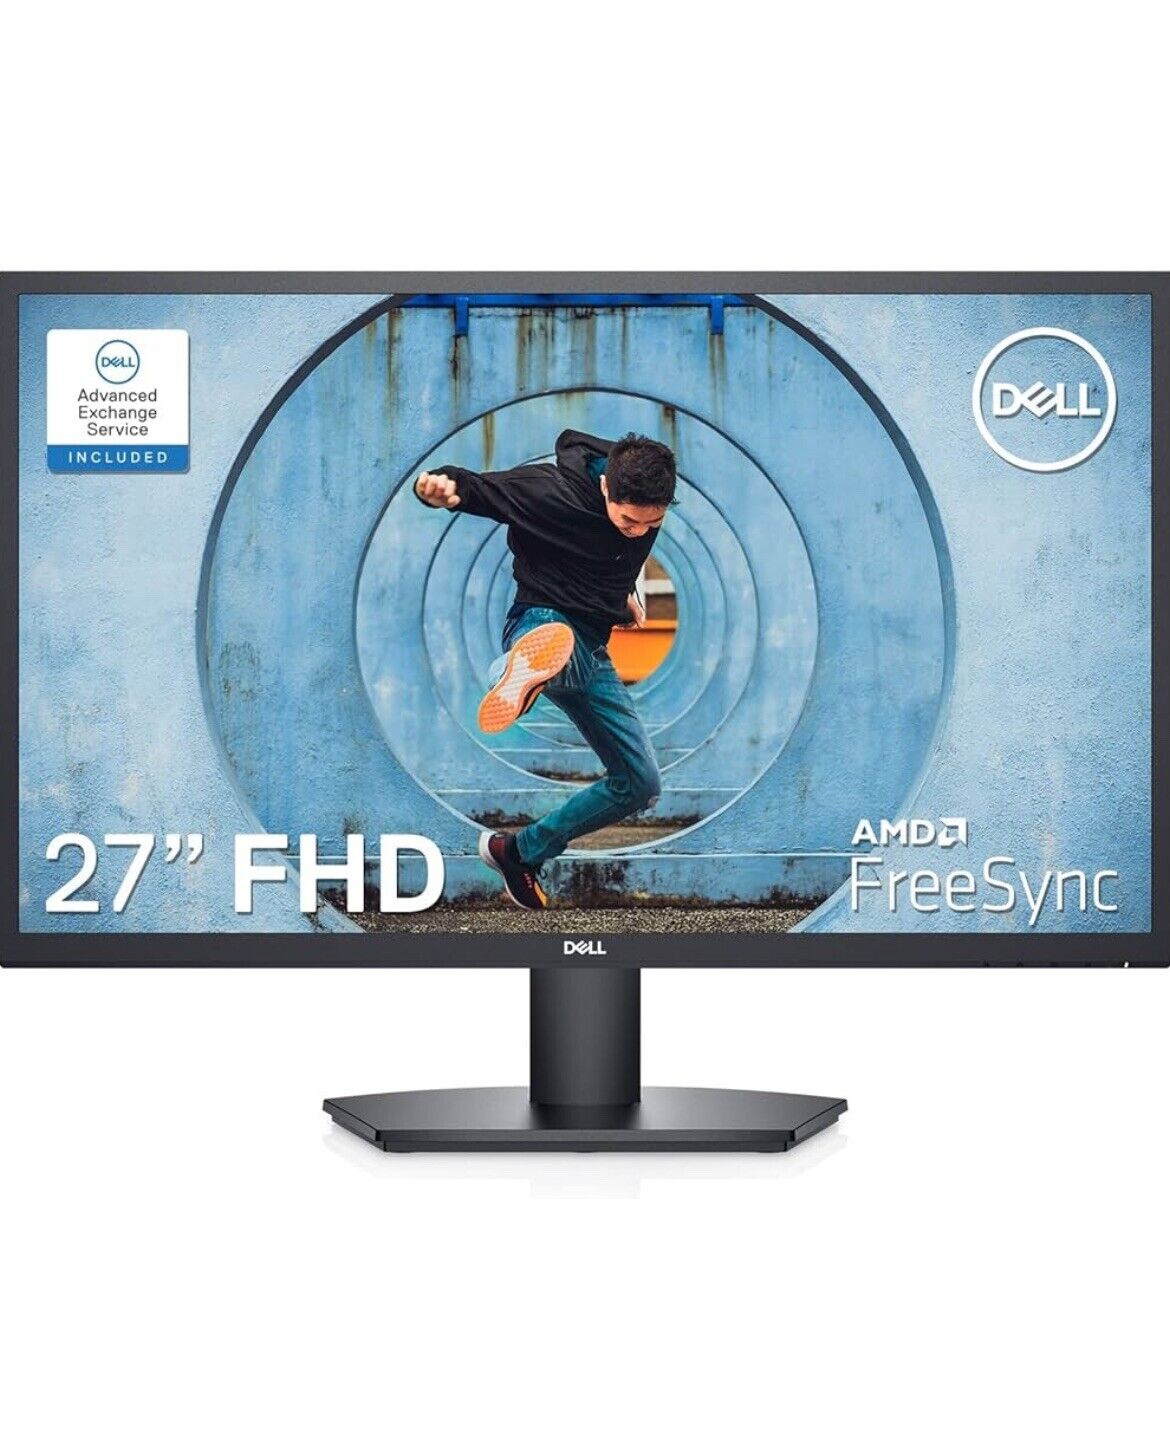 Dell SE2722HX Monitor - 27 inch FHD (1920 x 1080) 16:9 Ratio